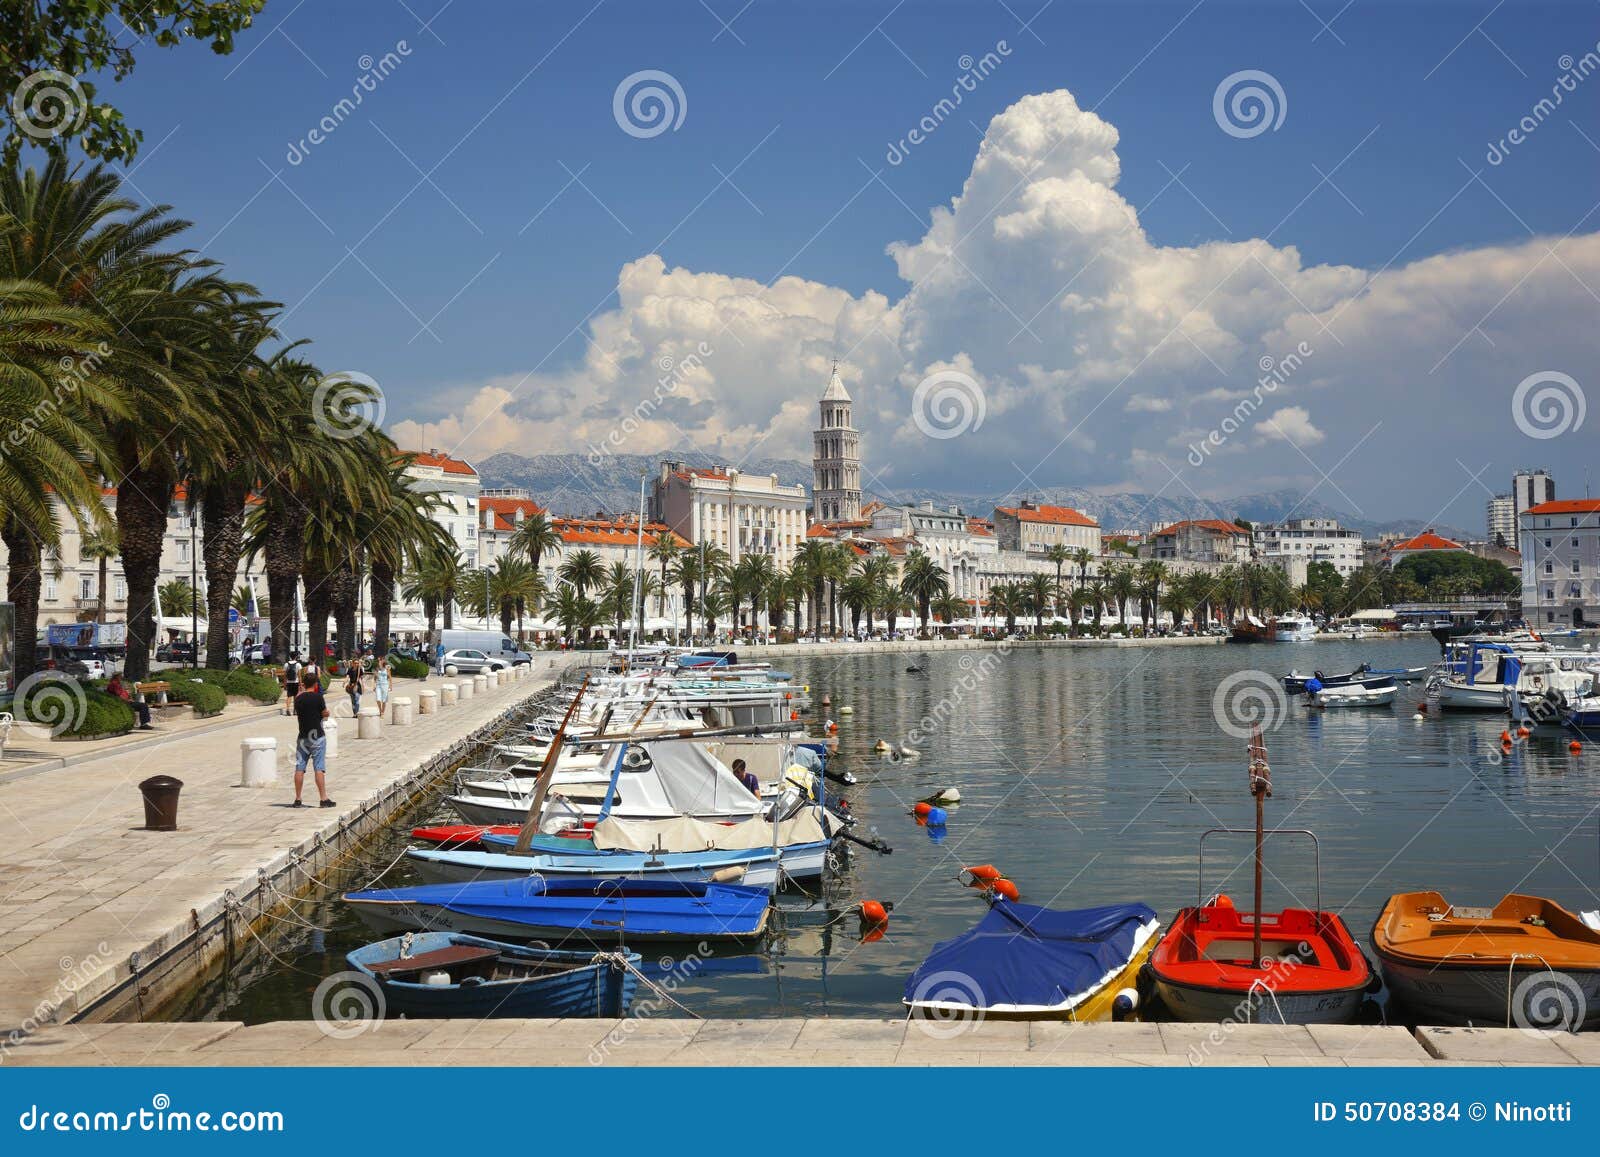 Split Croatia. Split old town in Dalmatia, Croatia